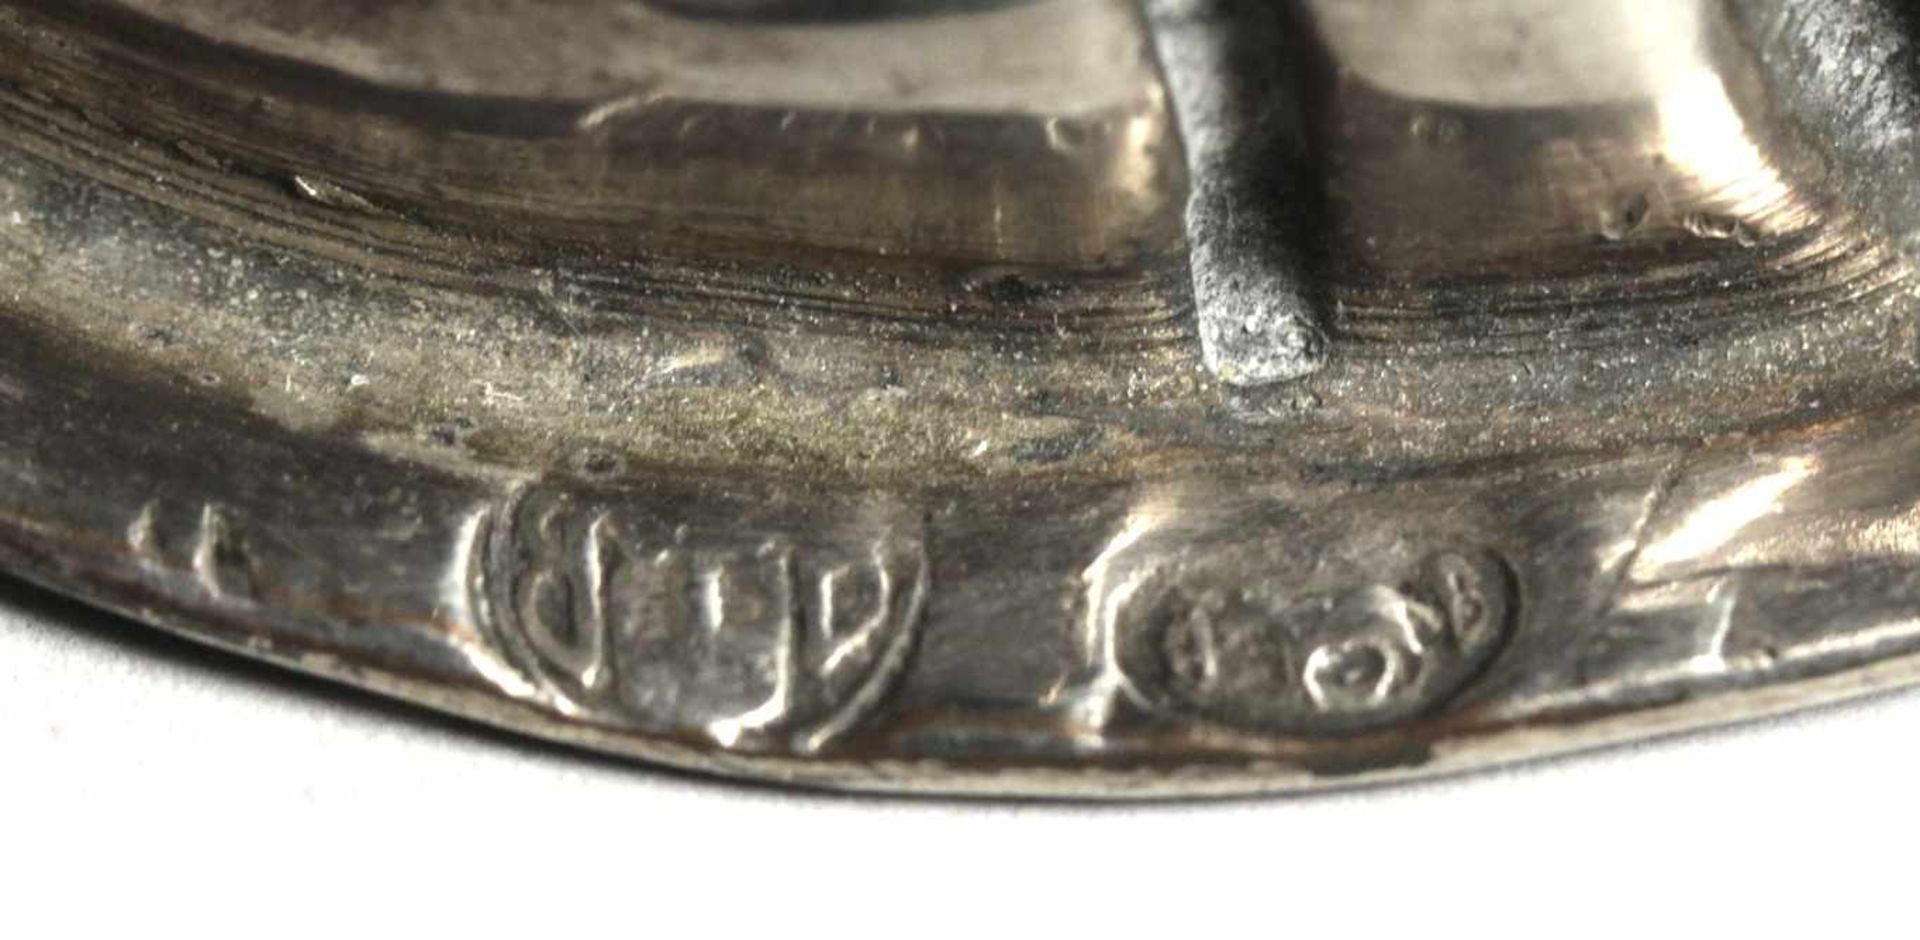 Metall-Ziervase, dt., 18. Jh., umlaufend 3-fach rapportierendes, reliefplastischgetriebenes Blatt- - Bild 2 aus 3